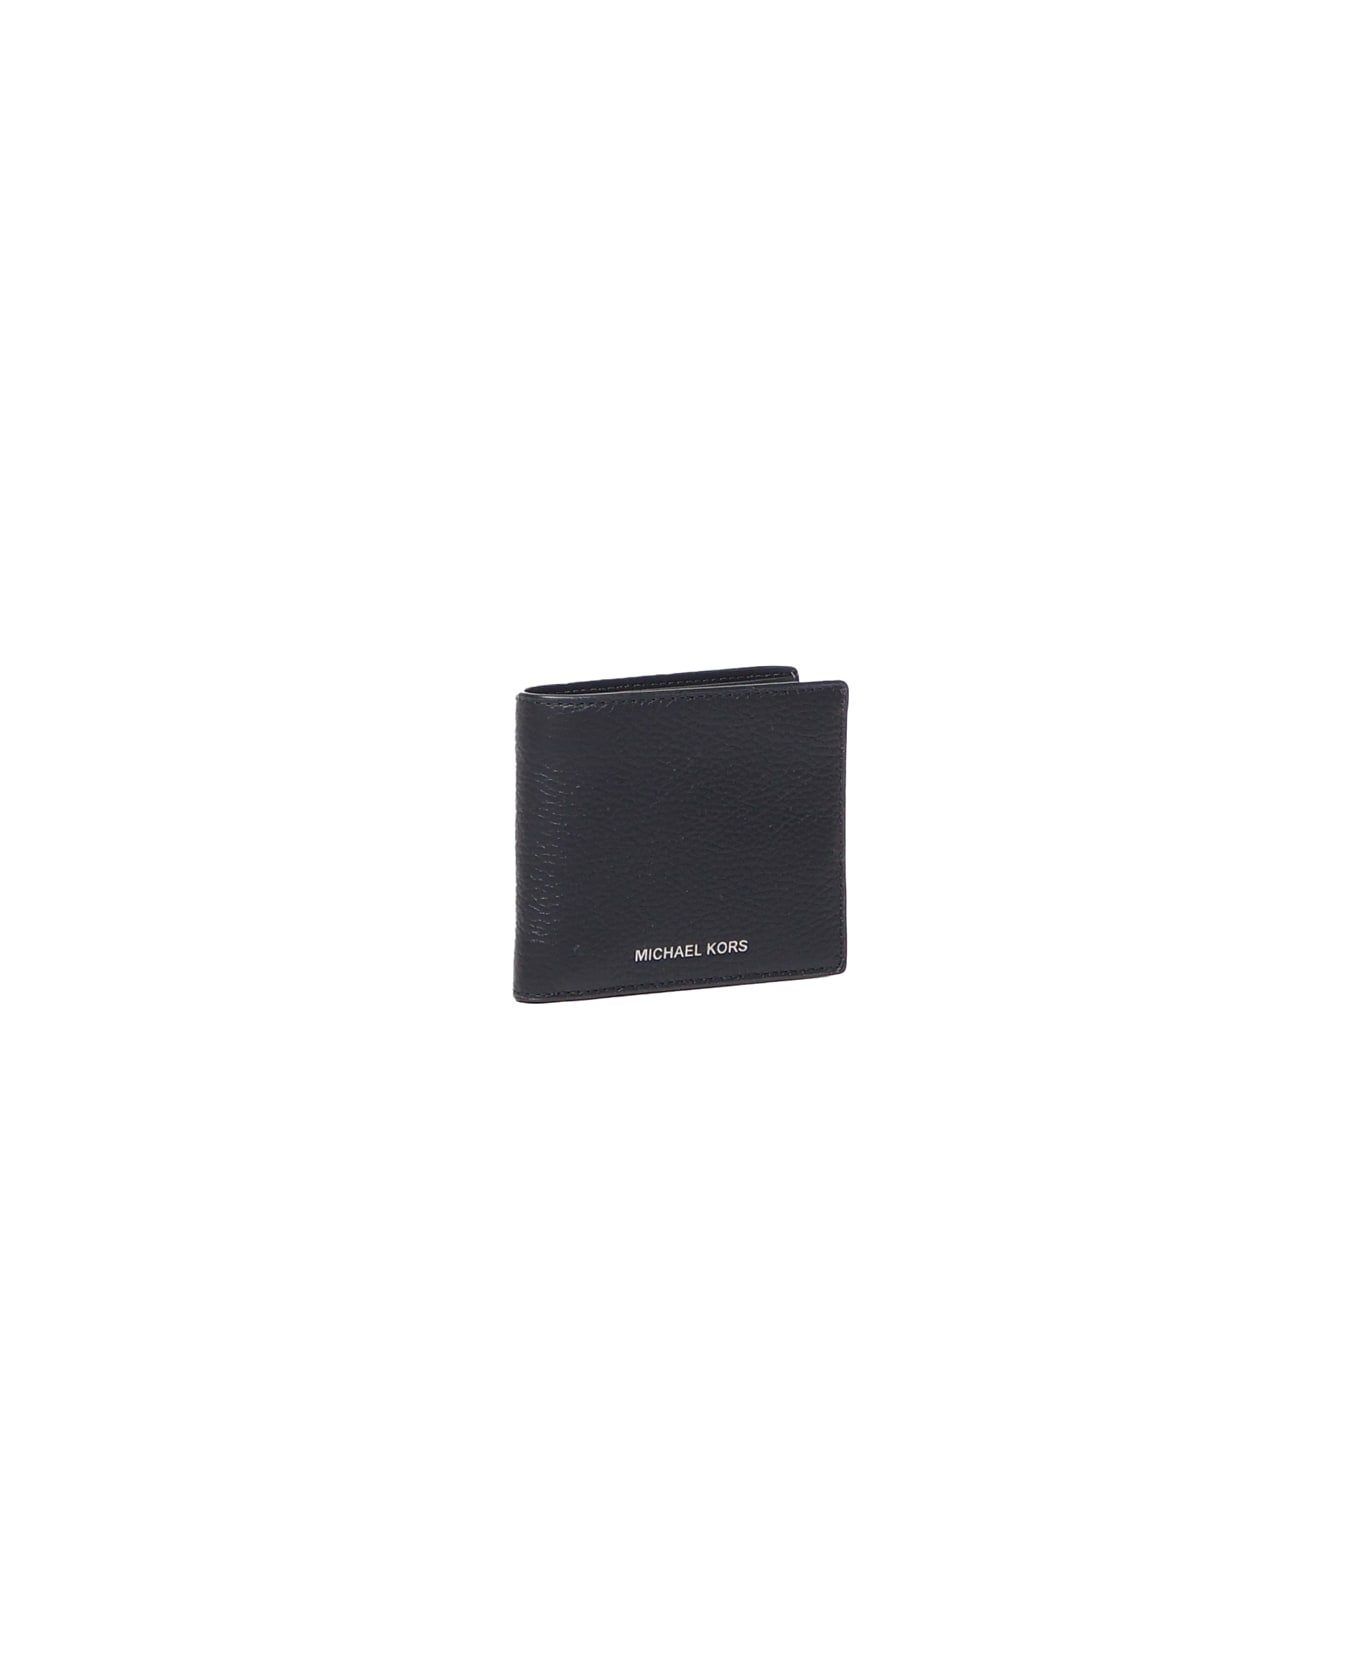 Michael Kors Bi-fold Wallet - Black 財布